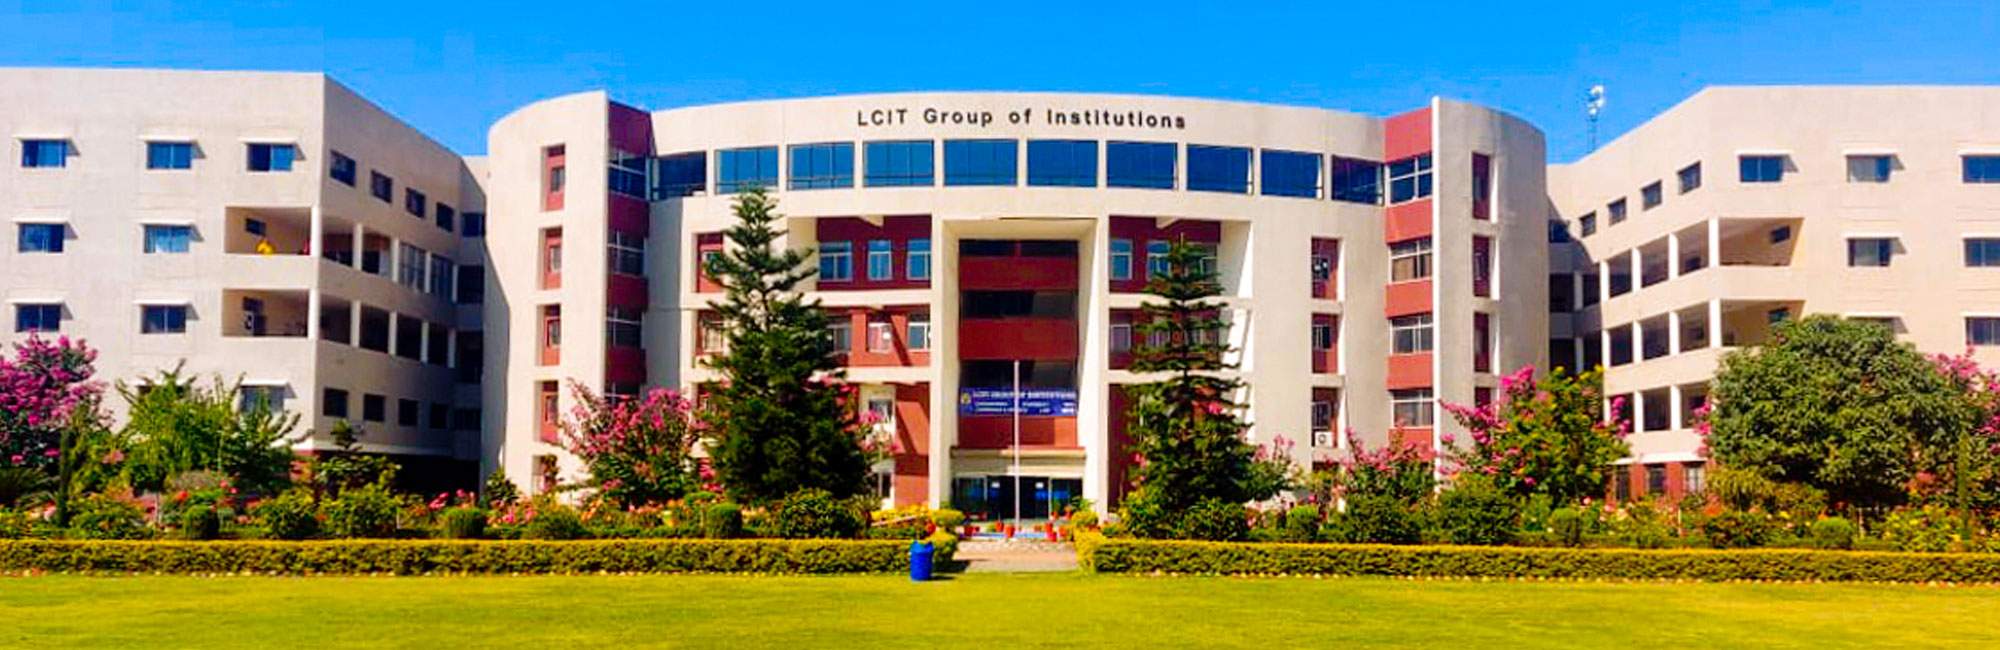 LCIT Main College Building